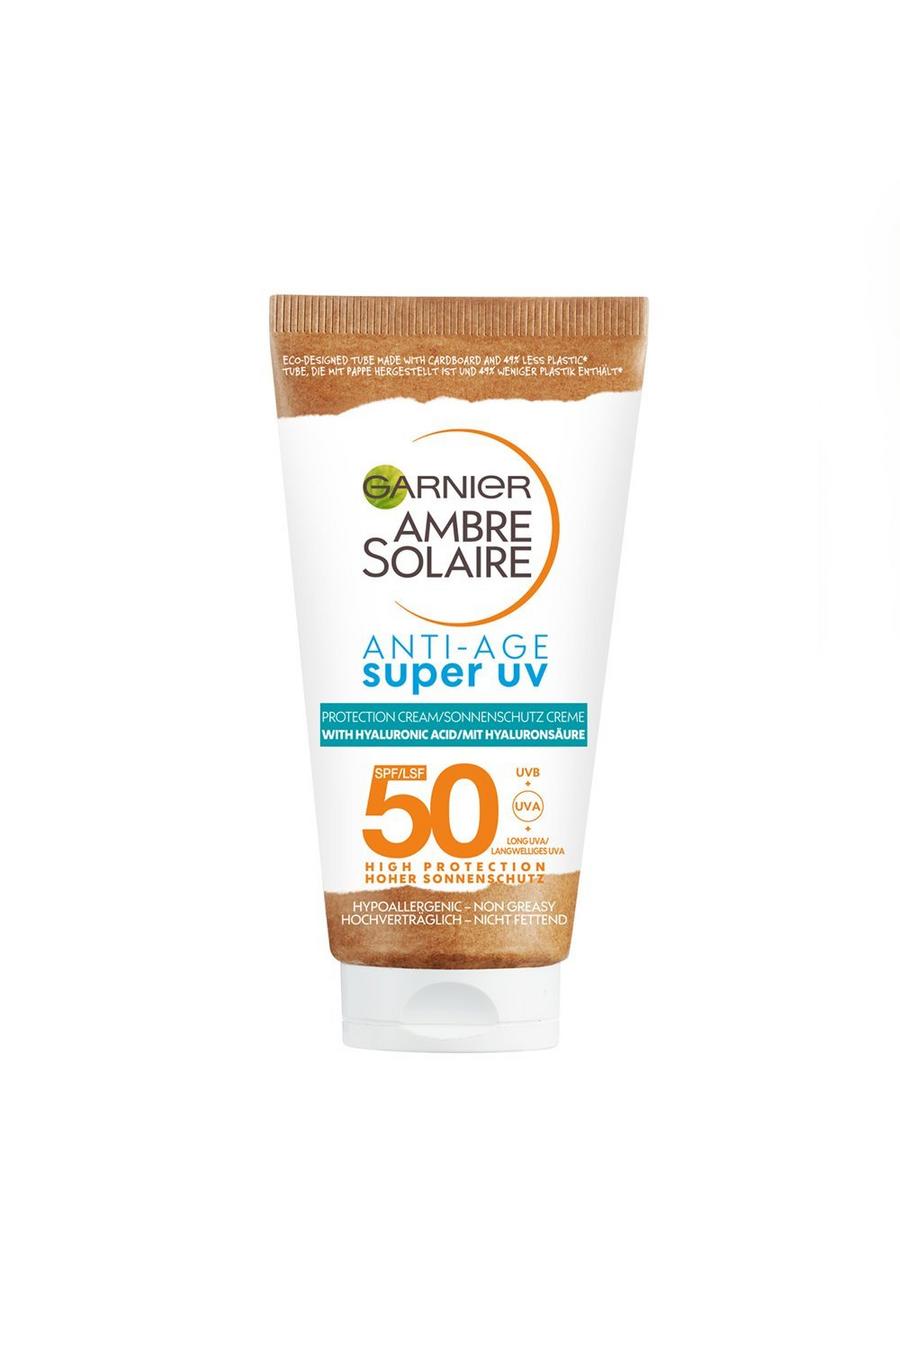 Garnier Ambre Solaire Anti-Age-Super-UV-Gesichtsschutzcreme SPF50 50ml, White blanc